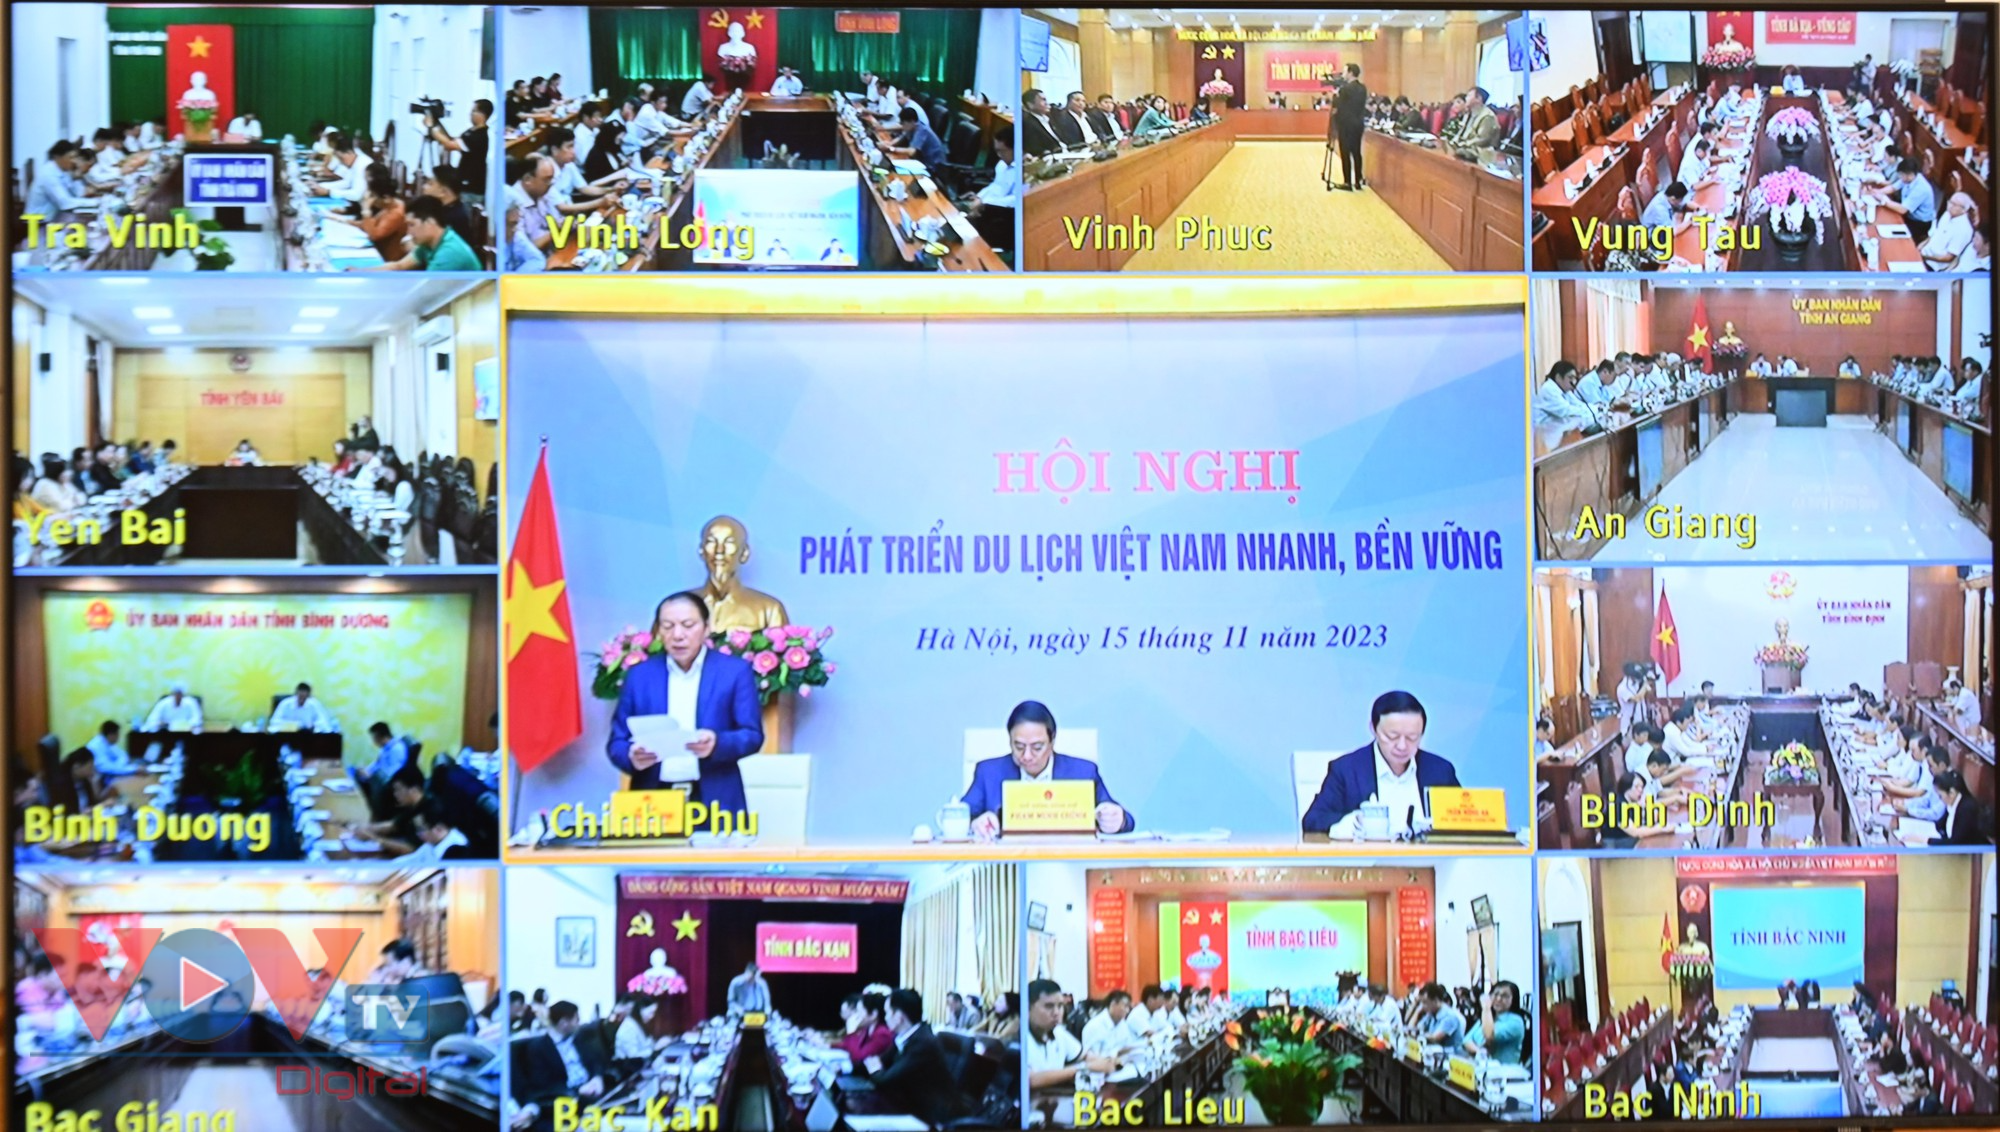 Thủ tướng: Tìm lời giải phát triển du lịch Việt Nam nhanh và bền vững- Ảnh 4.